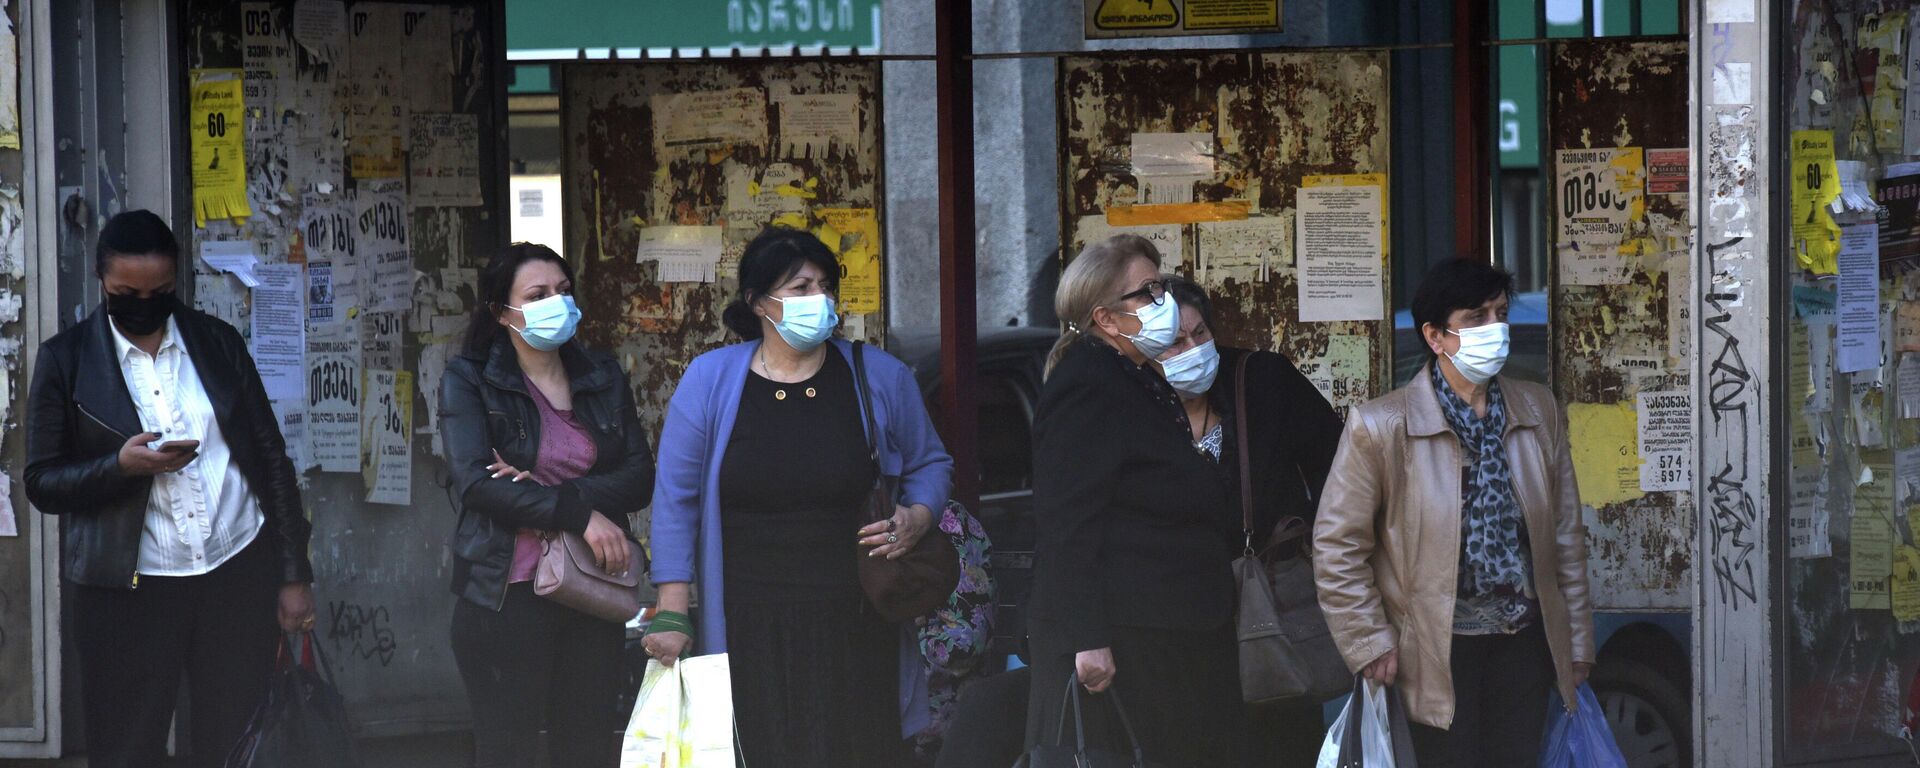 Эпидемия коронавируса - прохожие на улице в масках - Sputnik Грузия, 1920, 07.11.2021